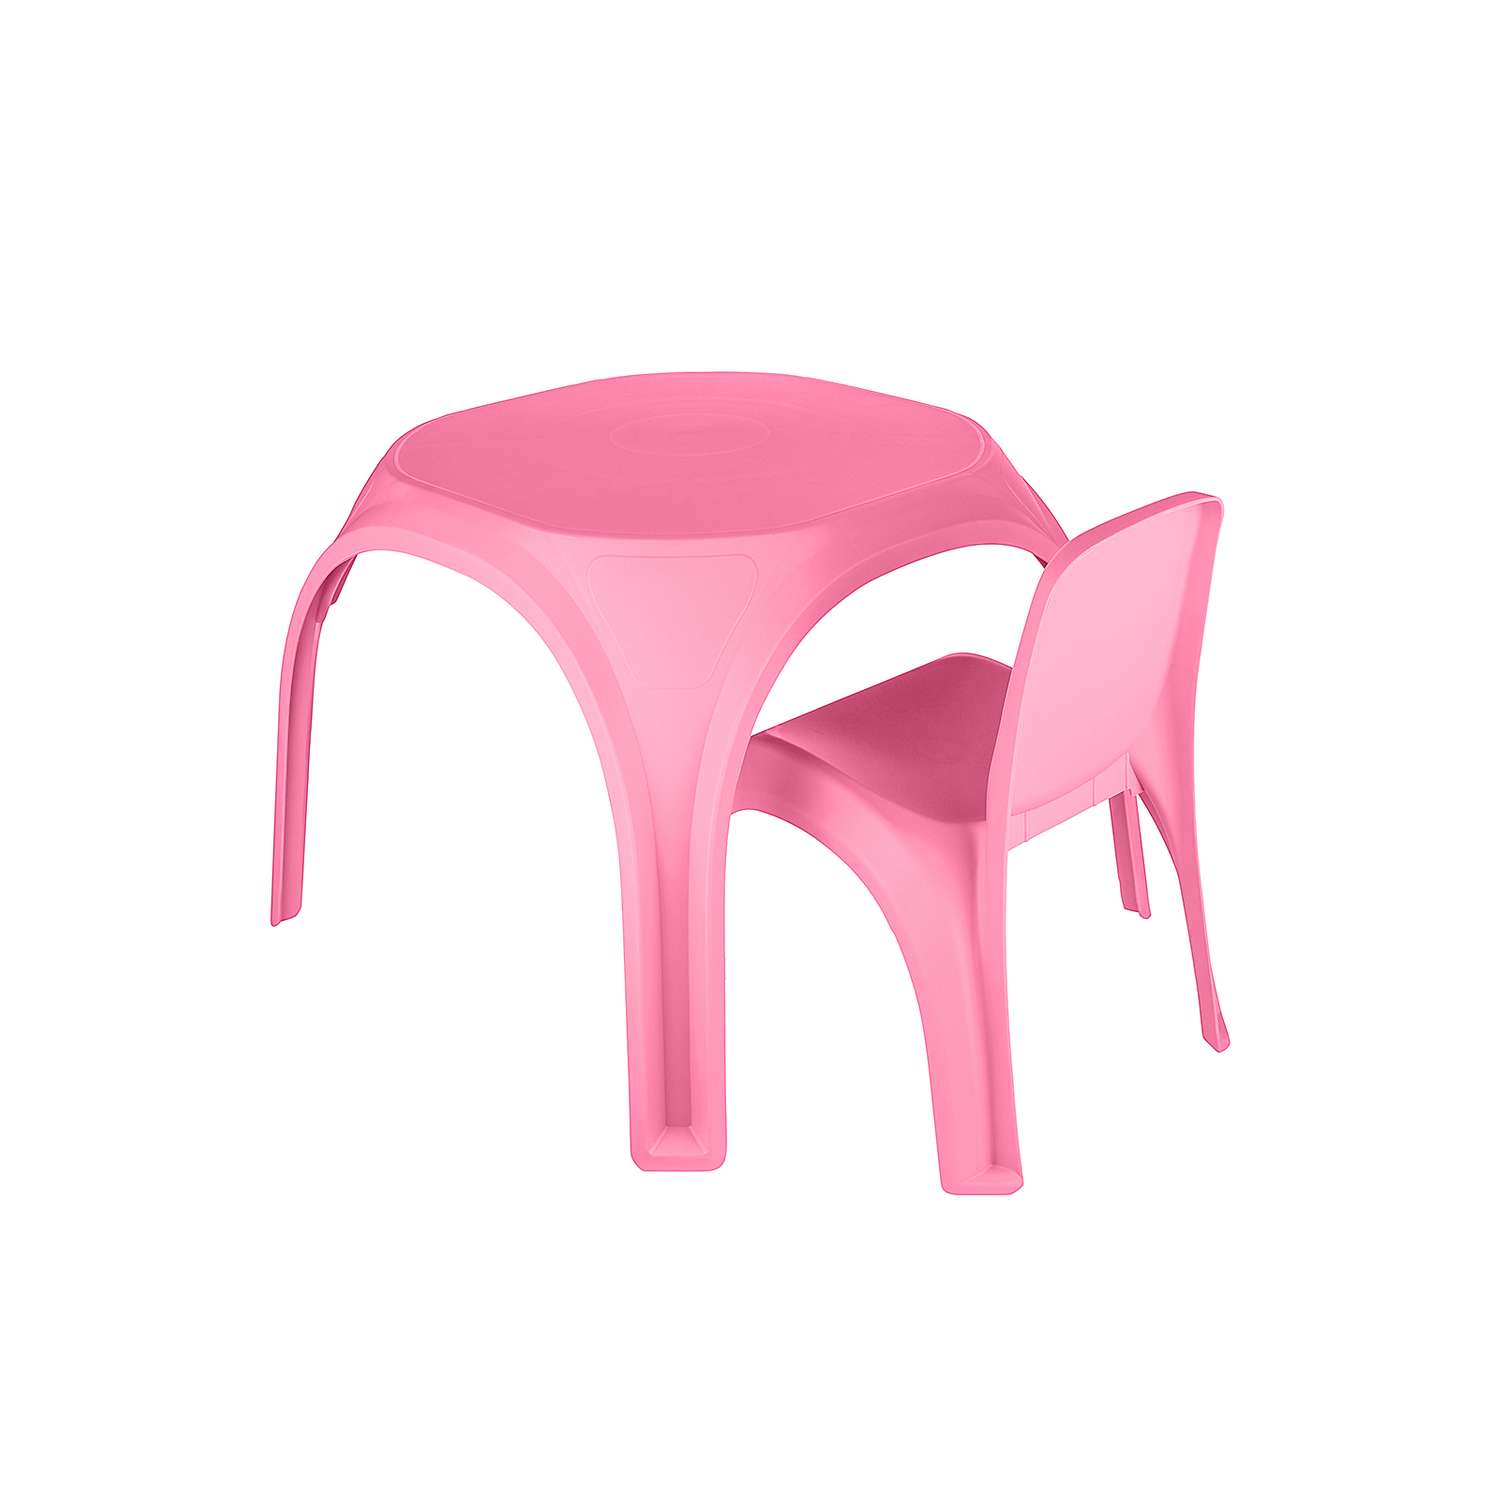 Стол десткий KETT-UP ОСЬМИНОЖКА пластиковый розовый - фото 5